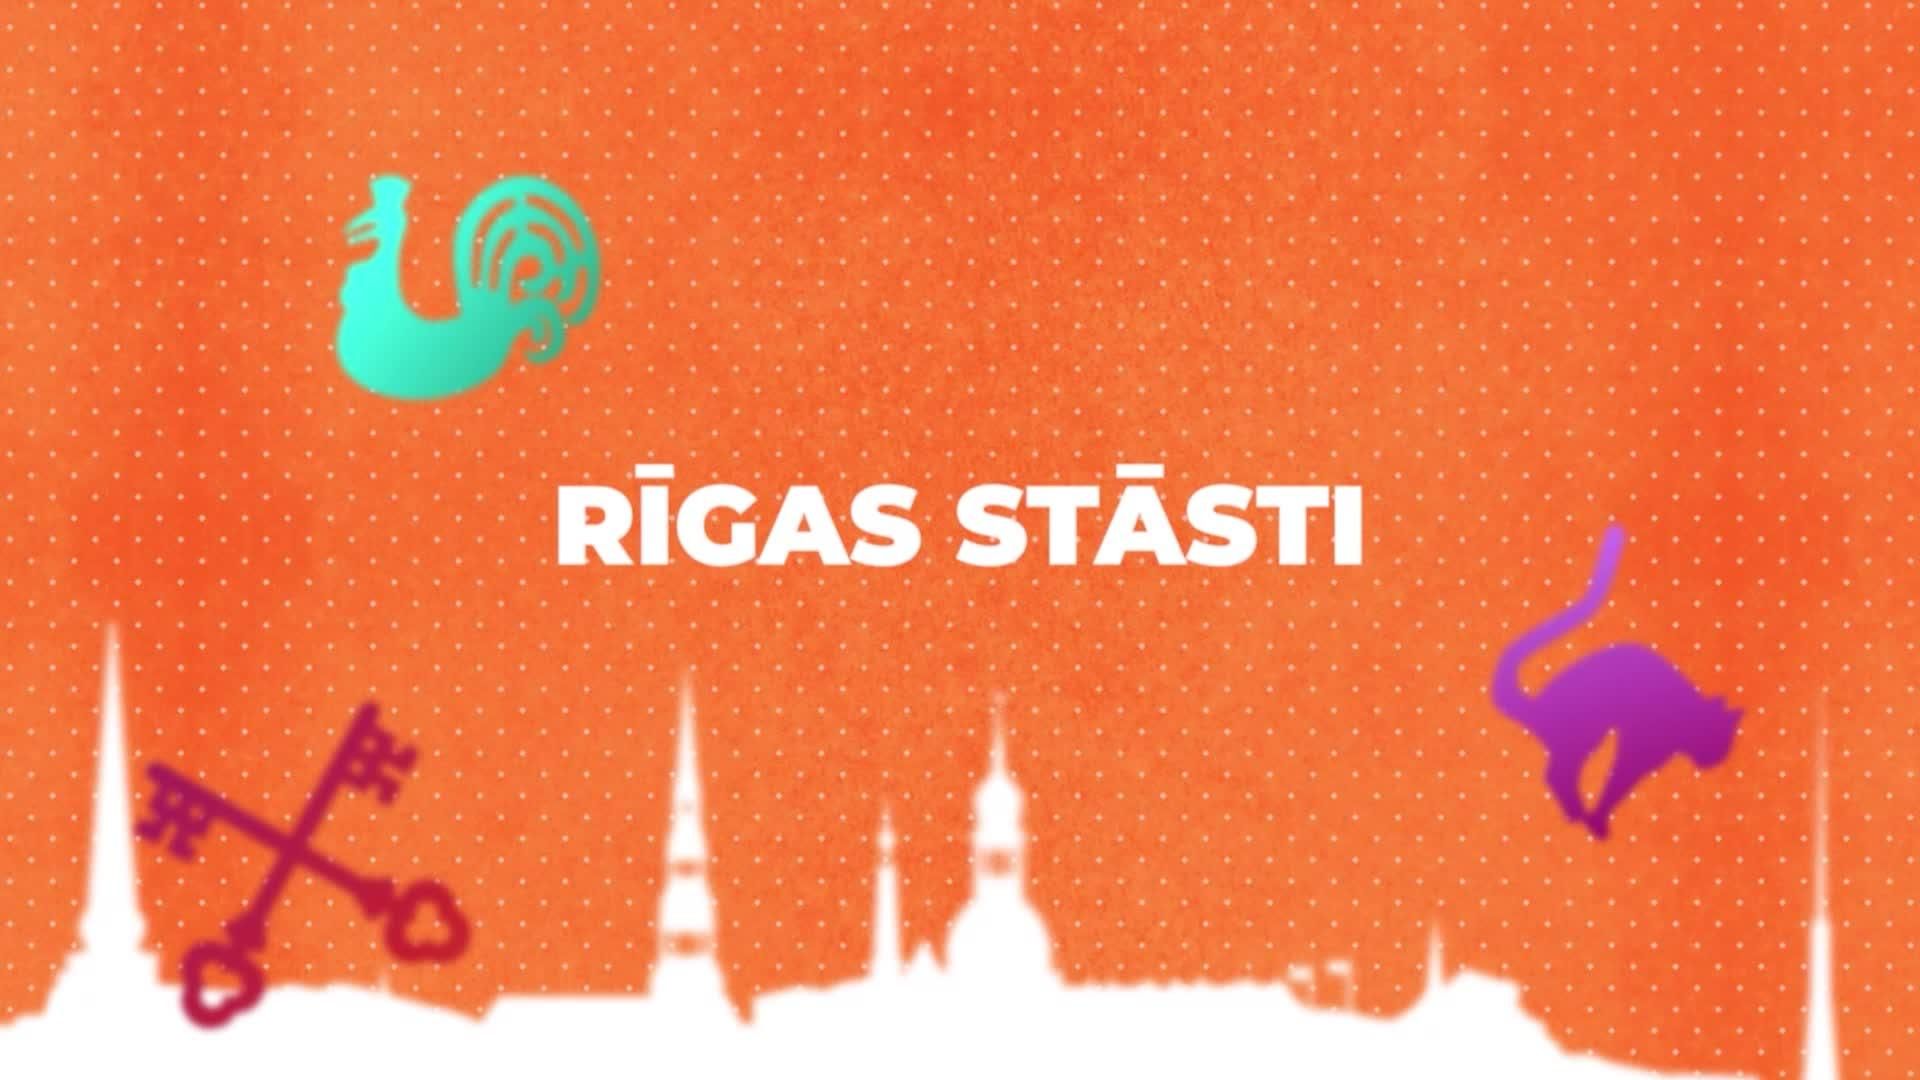 Rigas_stasti_E01